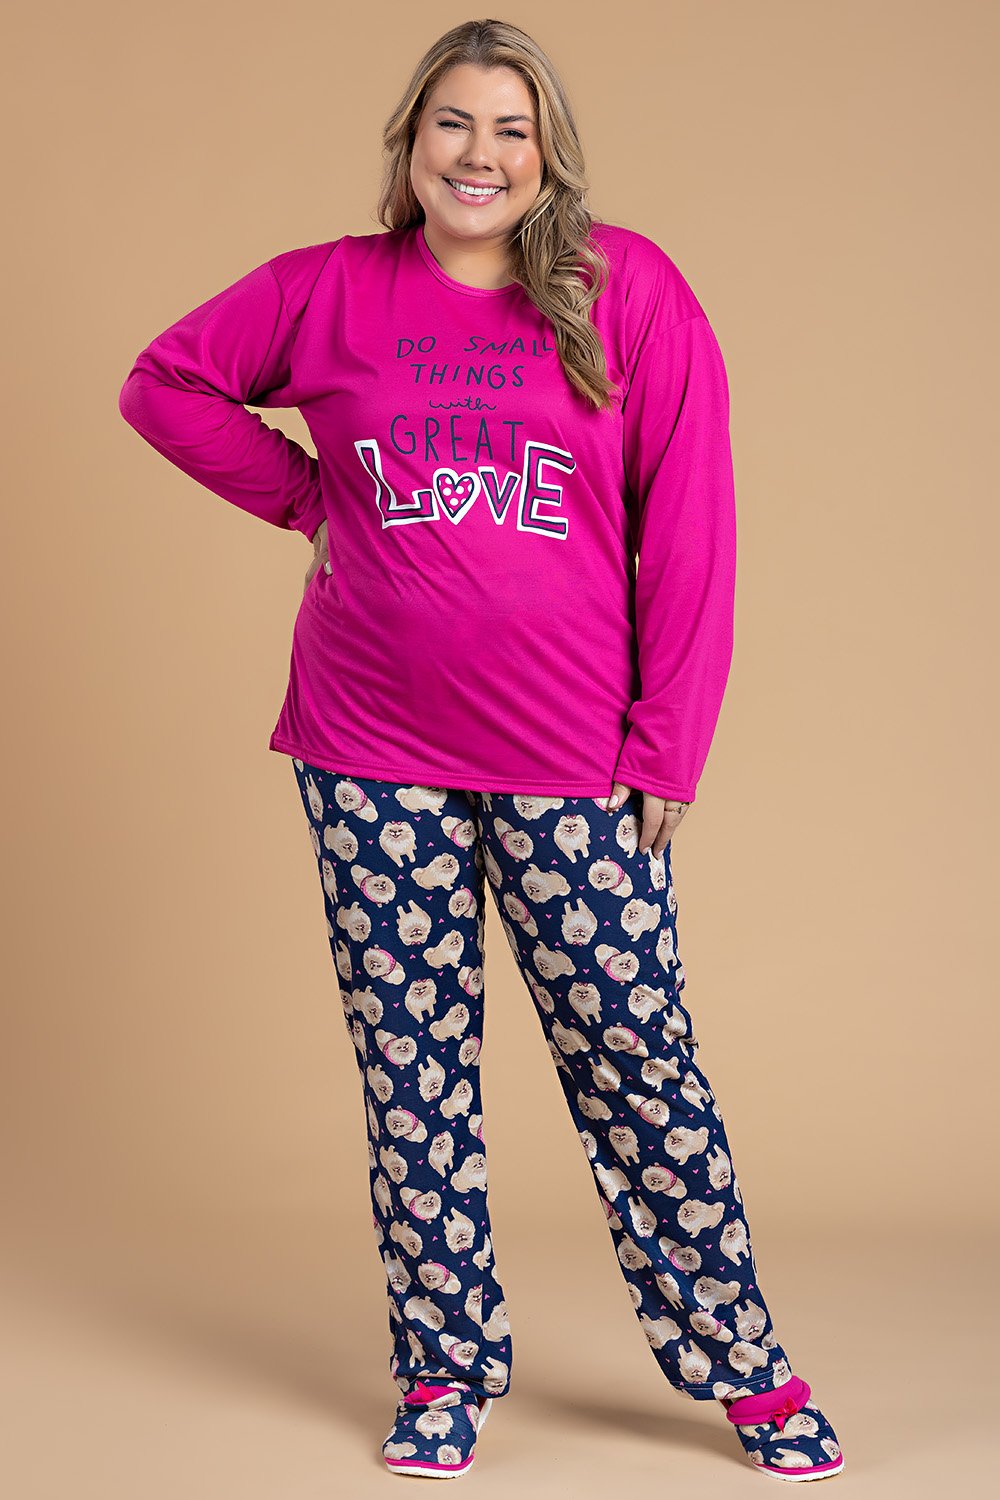 https://5009028l.ha.azioncdn.net/img/2023/02/produto/4244/pijama-feminino-plus-size-great-love-pink-jc11-36-2.jpg